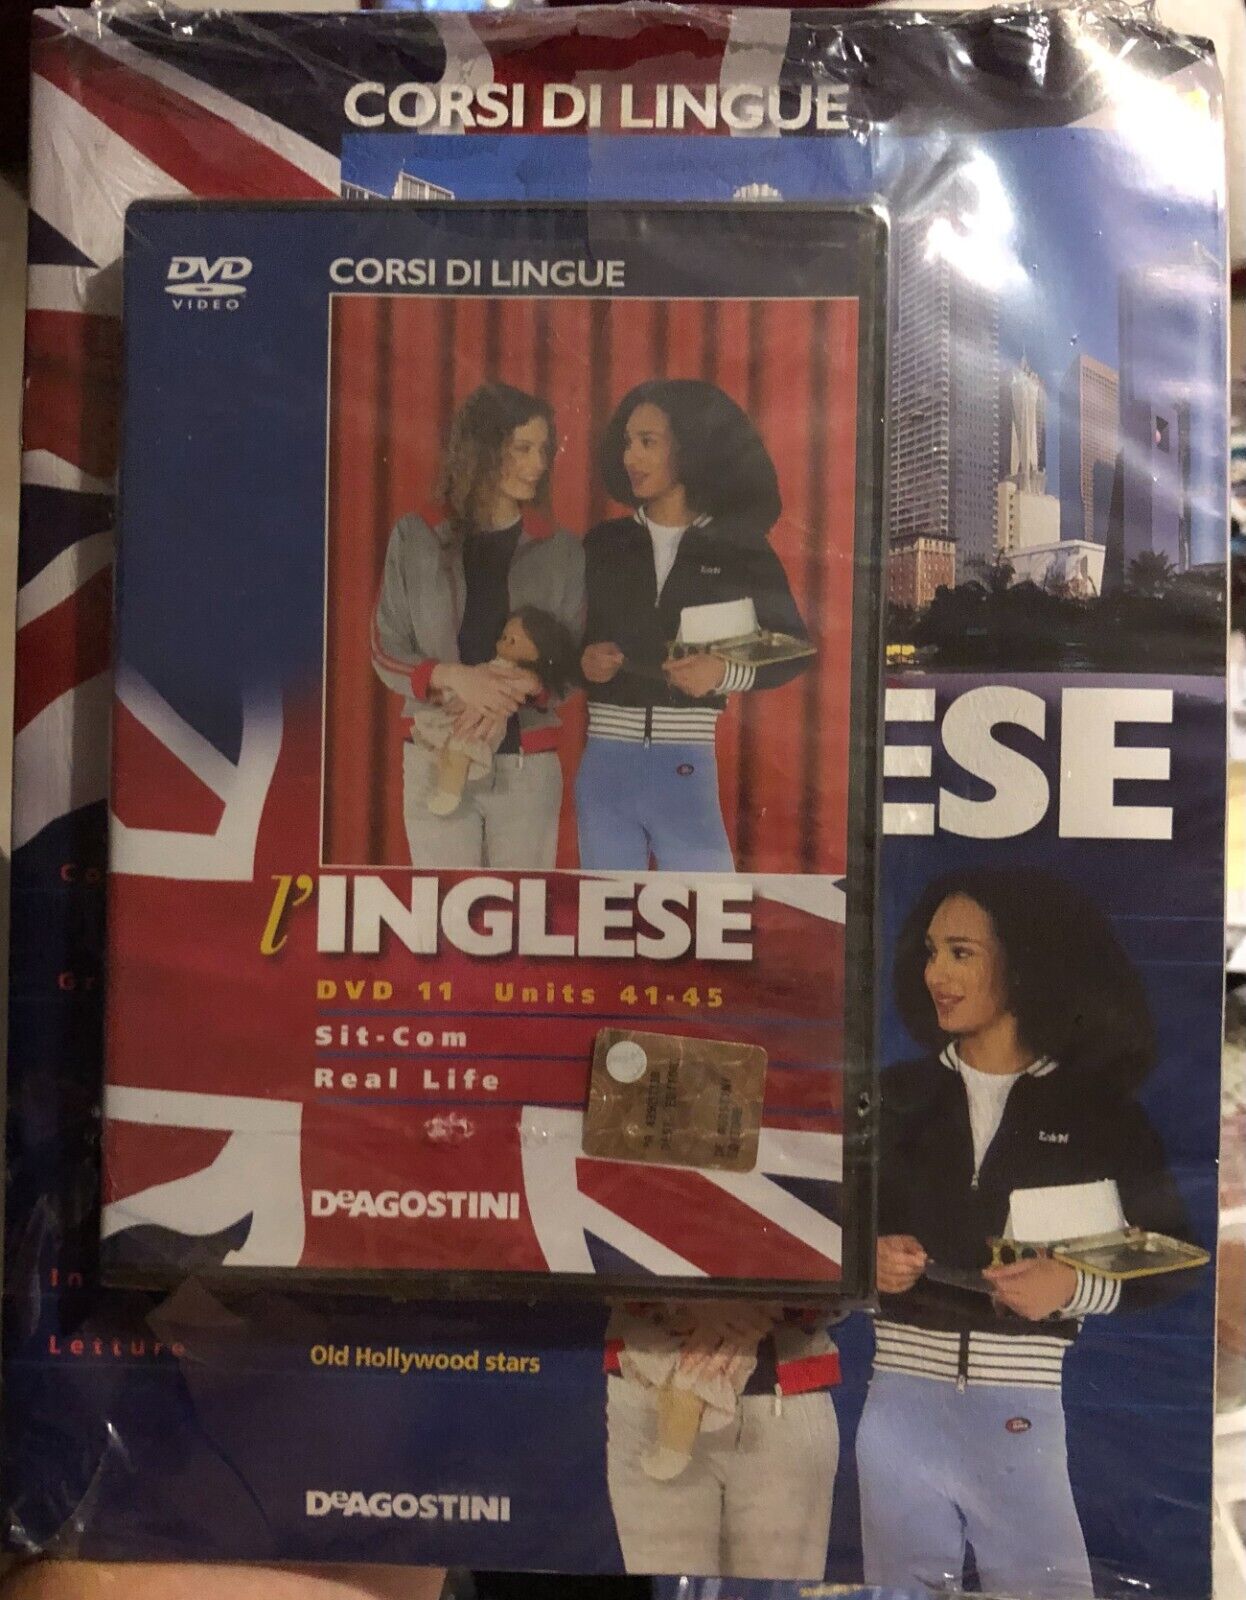 Corsi di lingue L'inglese fascicolo 41+DVD di Aa.vv.,  2008,  Deagostini